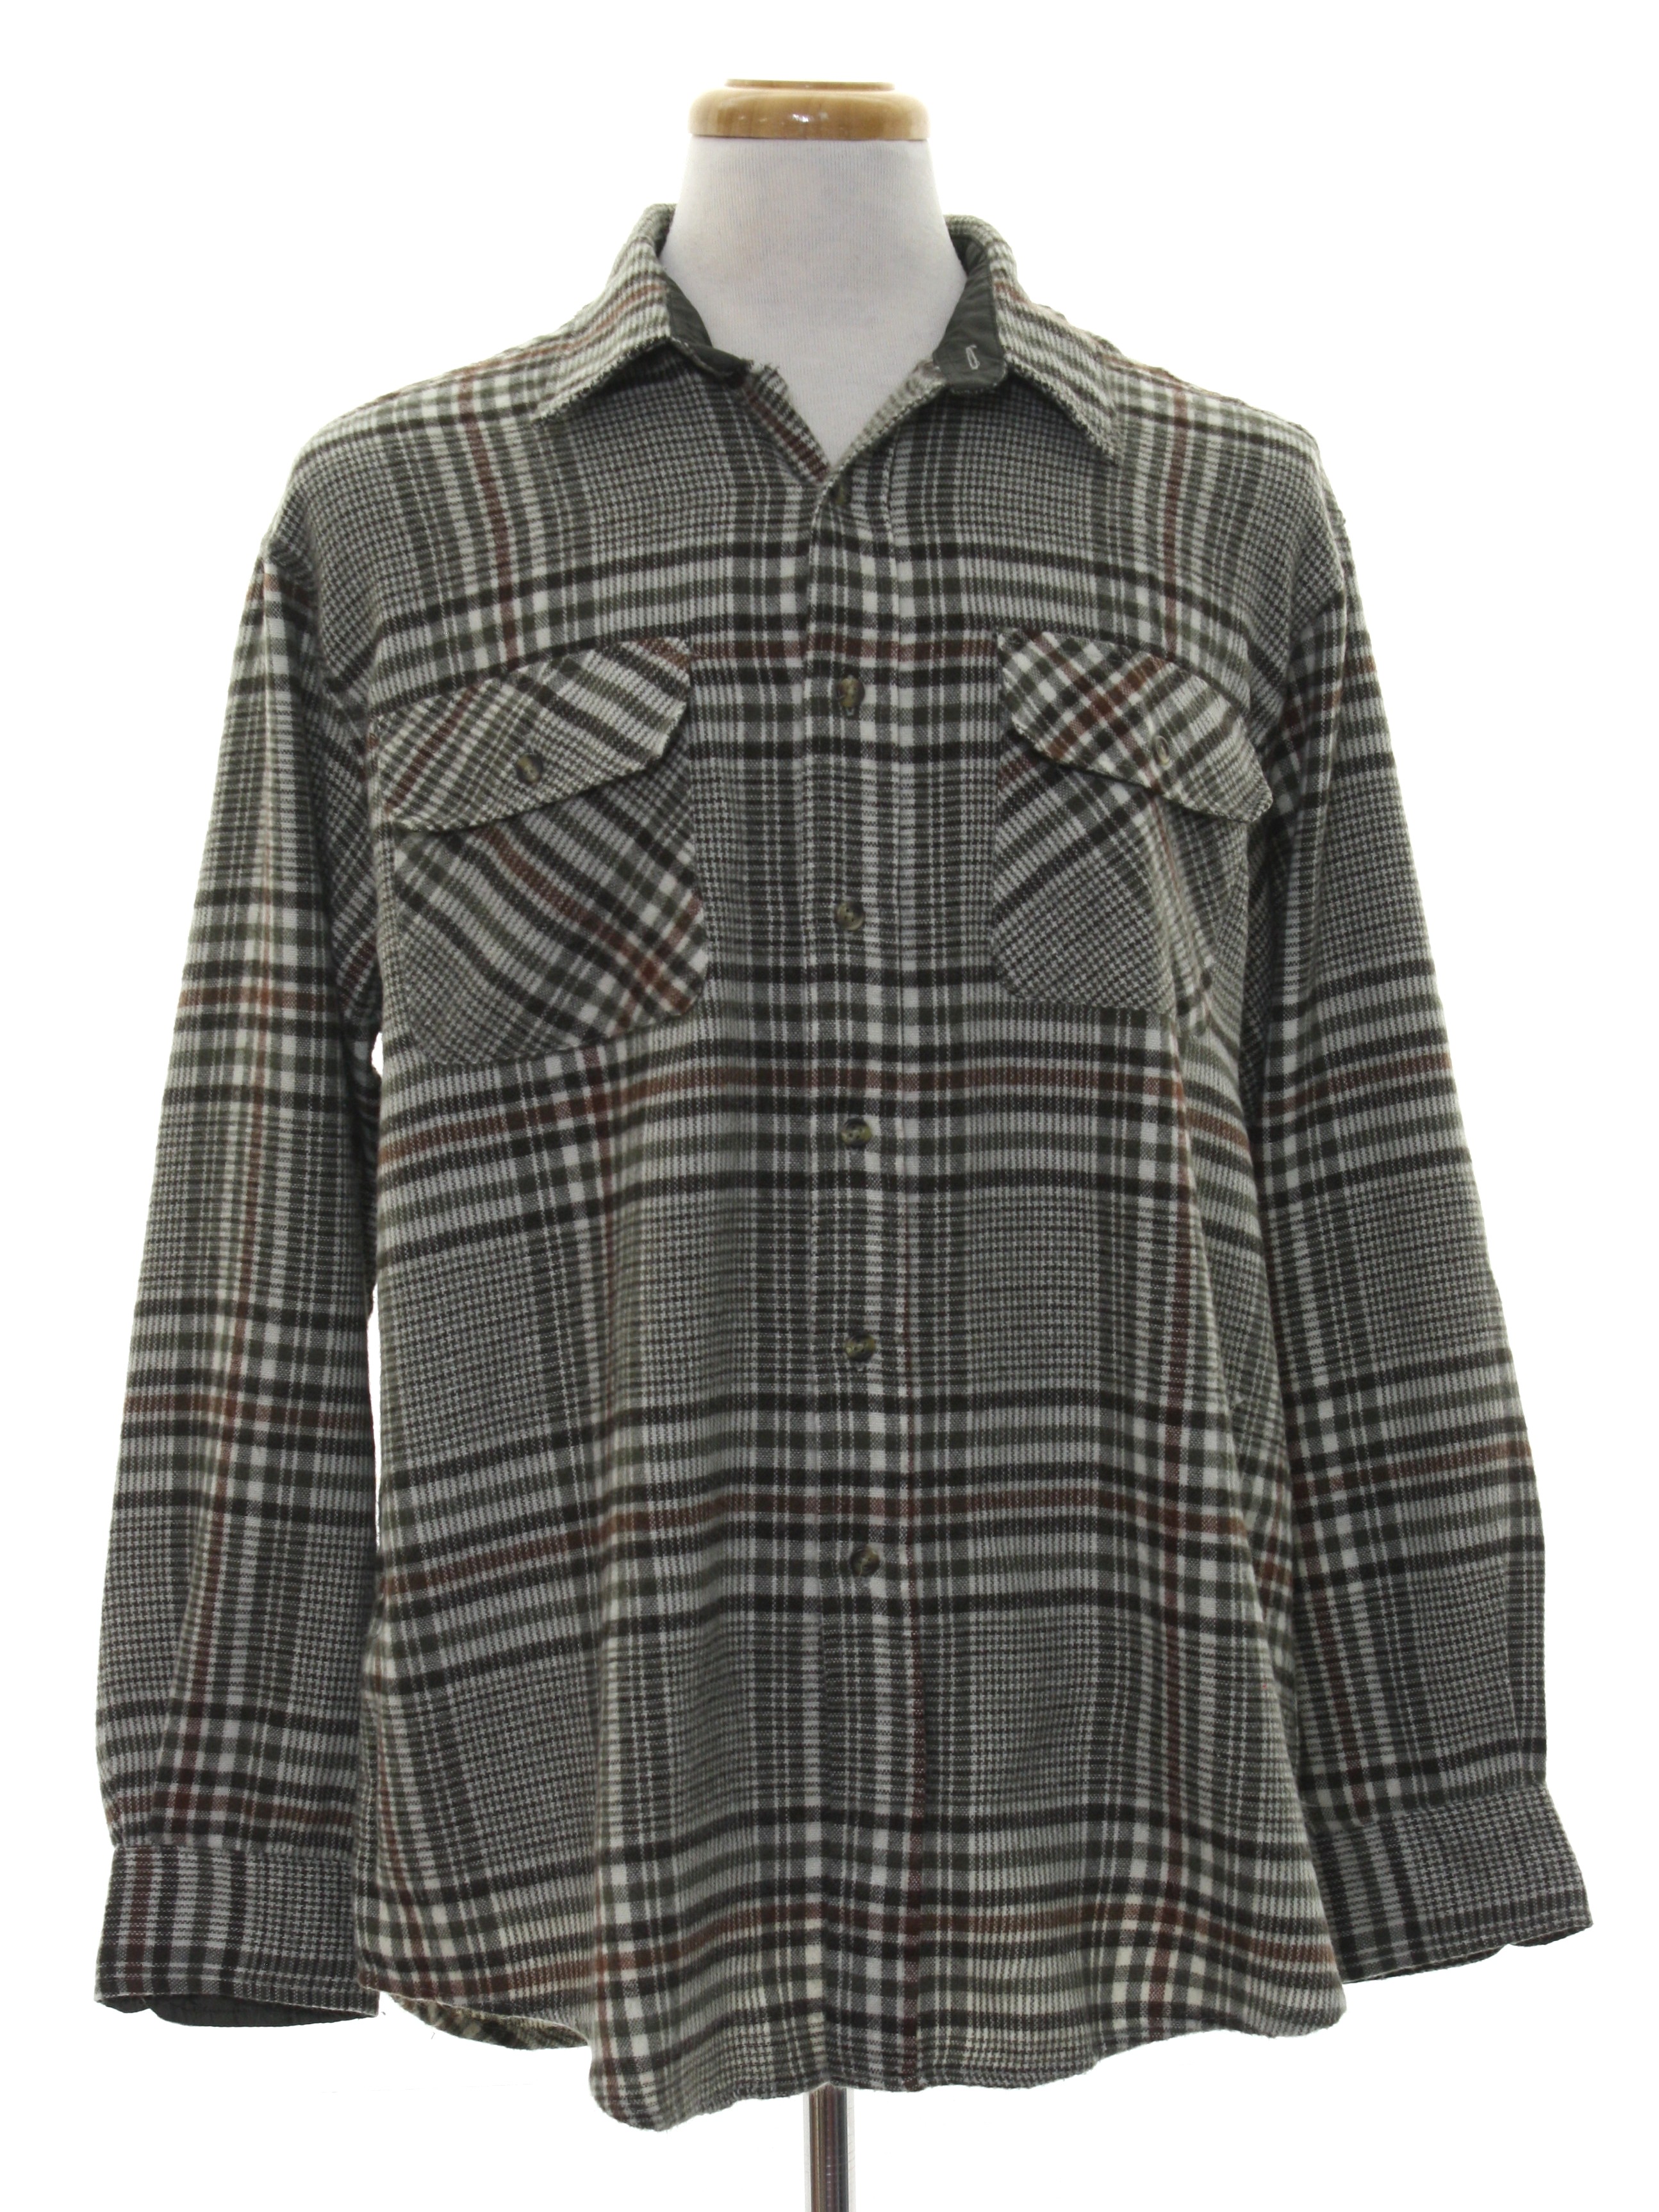 Nineties David Taylor Shirt: 90s -David Taylor- Mens plaid print in ...